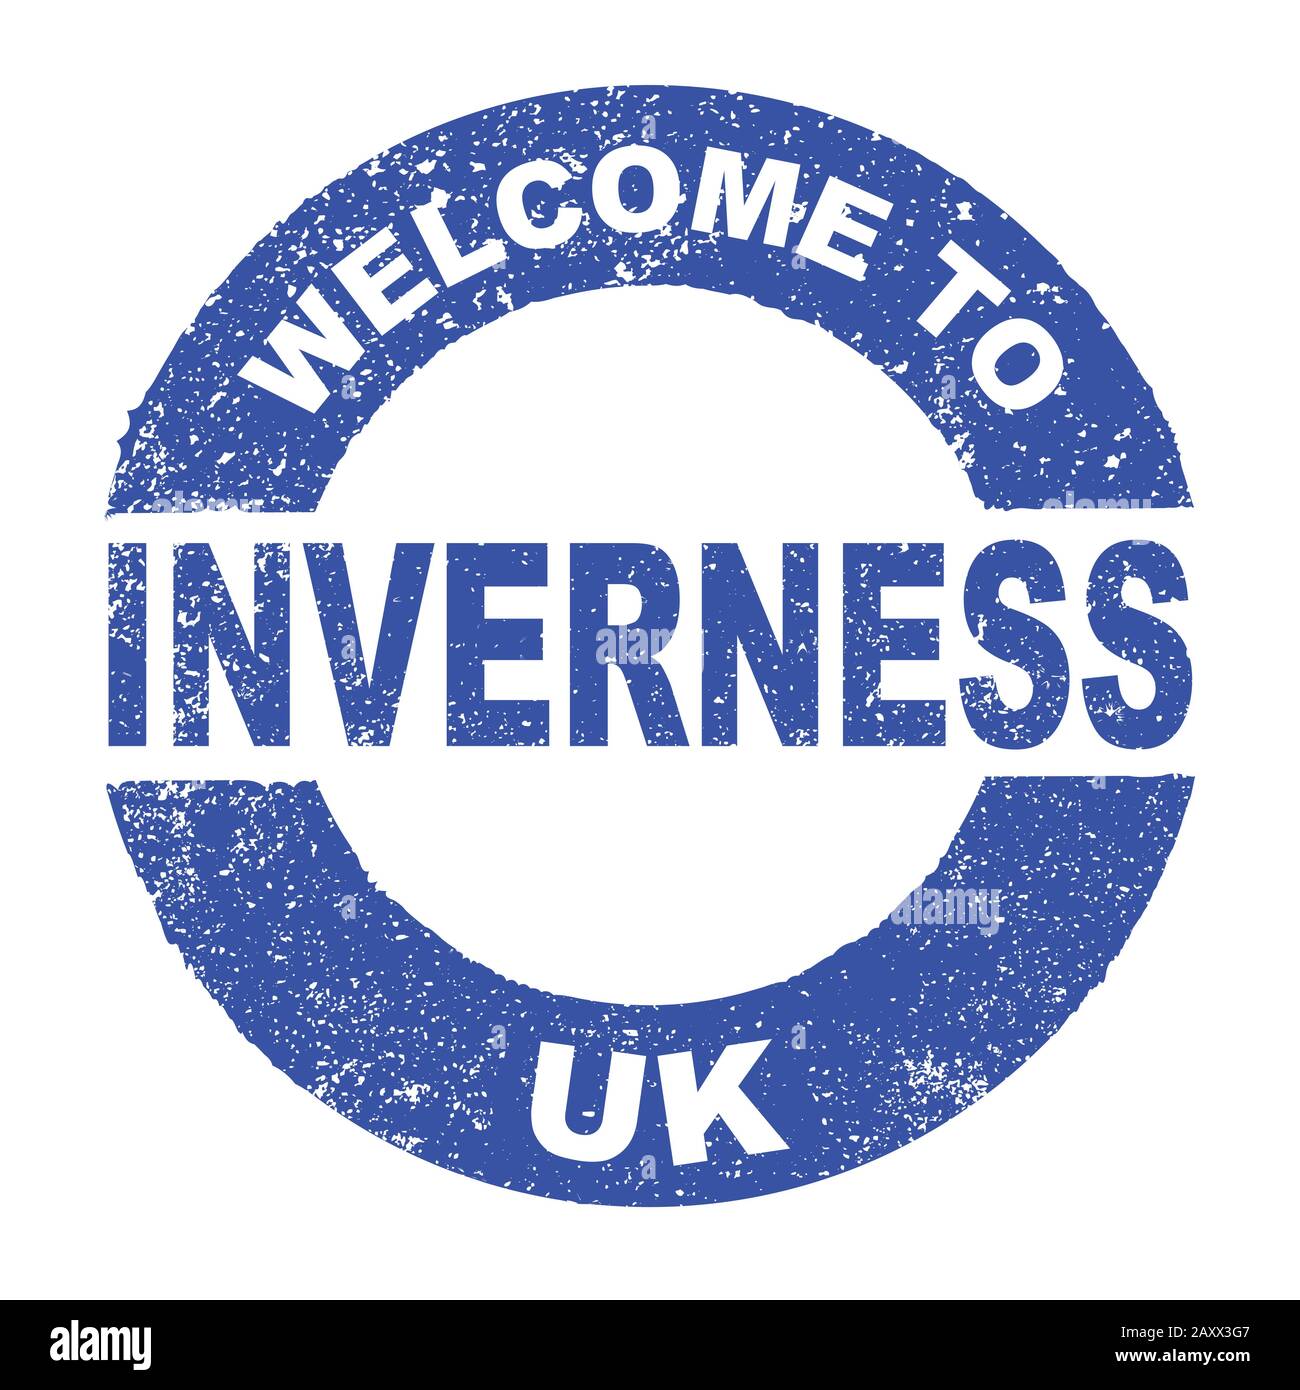 Un tampon d'encre en caoutchouc grunge avec le texte Bienvenue À INVERNESS UK sur un fond blanc Illustration de Vecteur